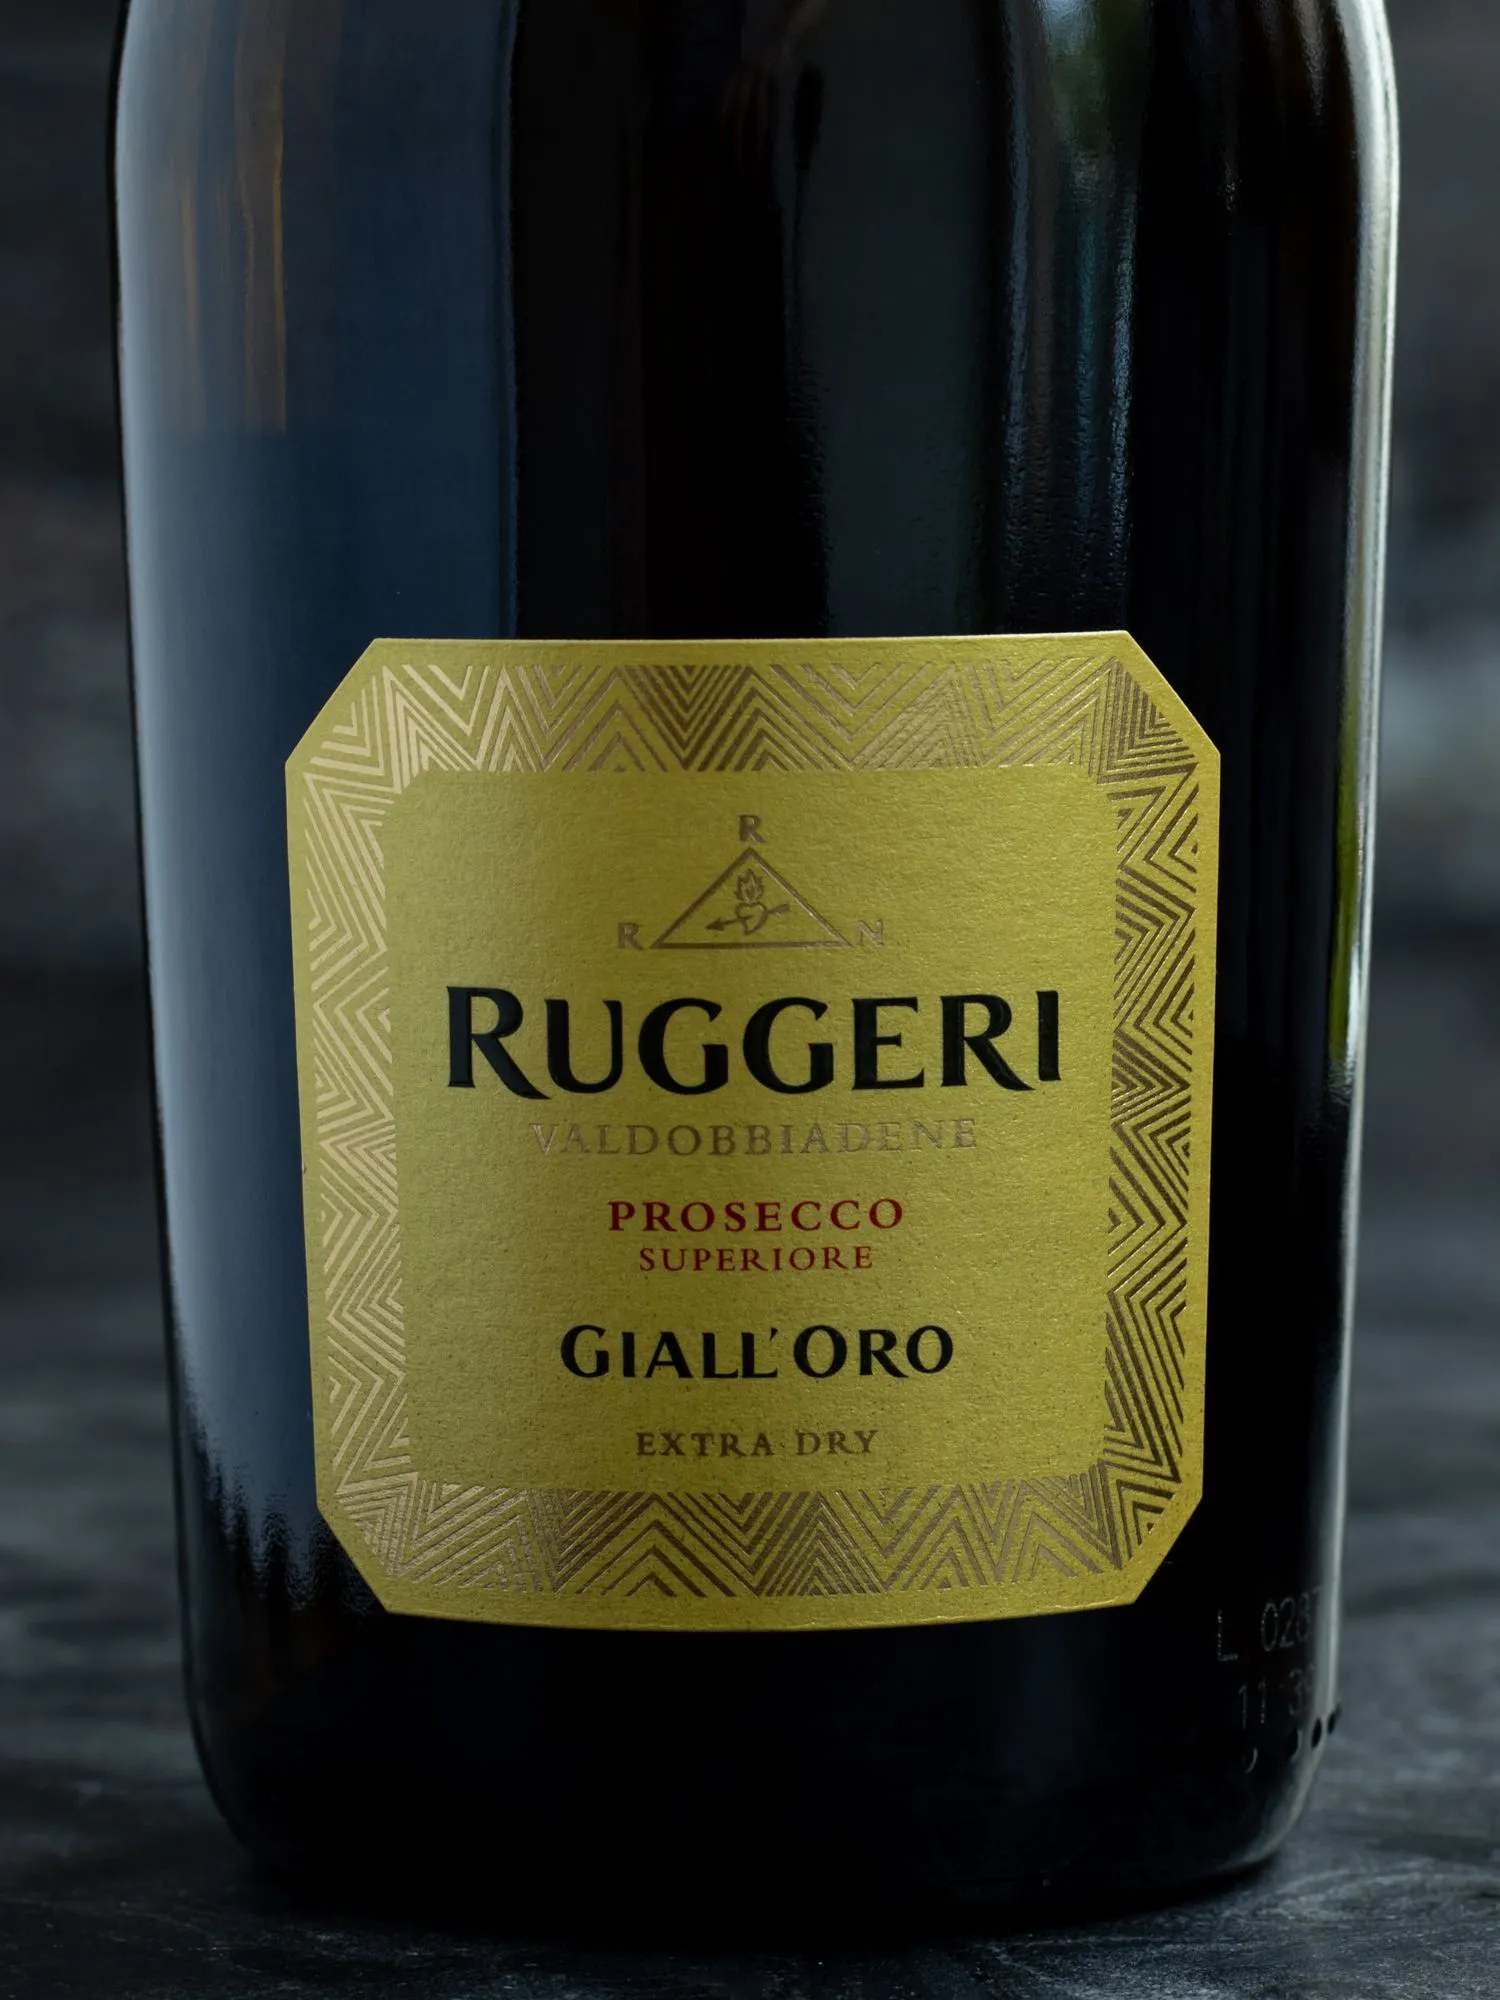 Игристое вино Ruggeri Prosecco Valdobbiadene Giall'Oro / Руджери Просекко Супериоре Вальдоббьядене Джалл`оро